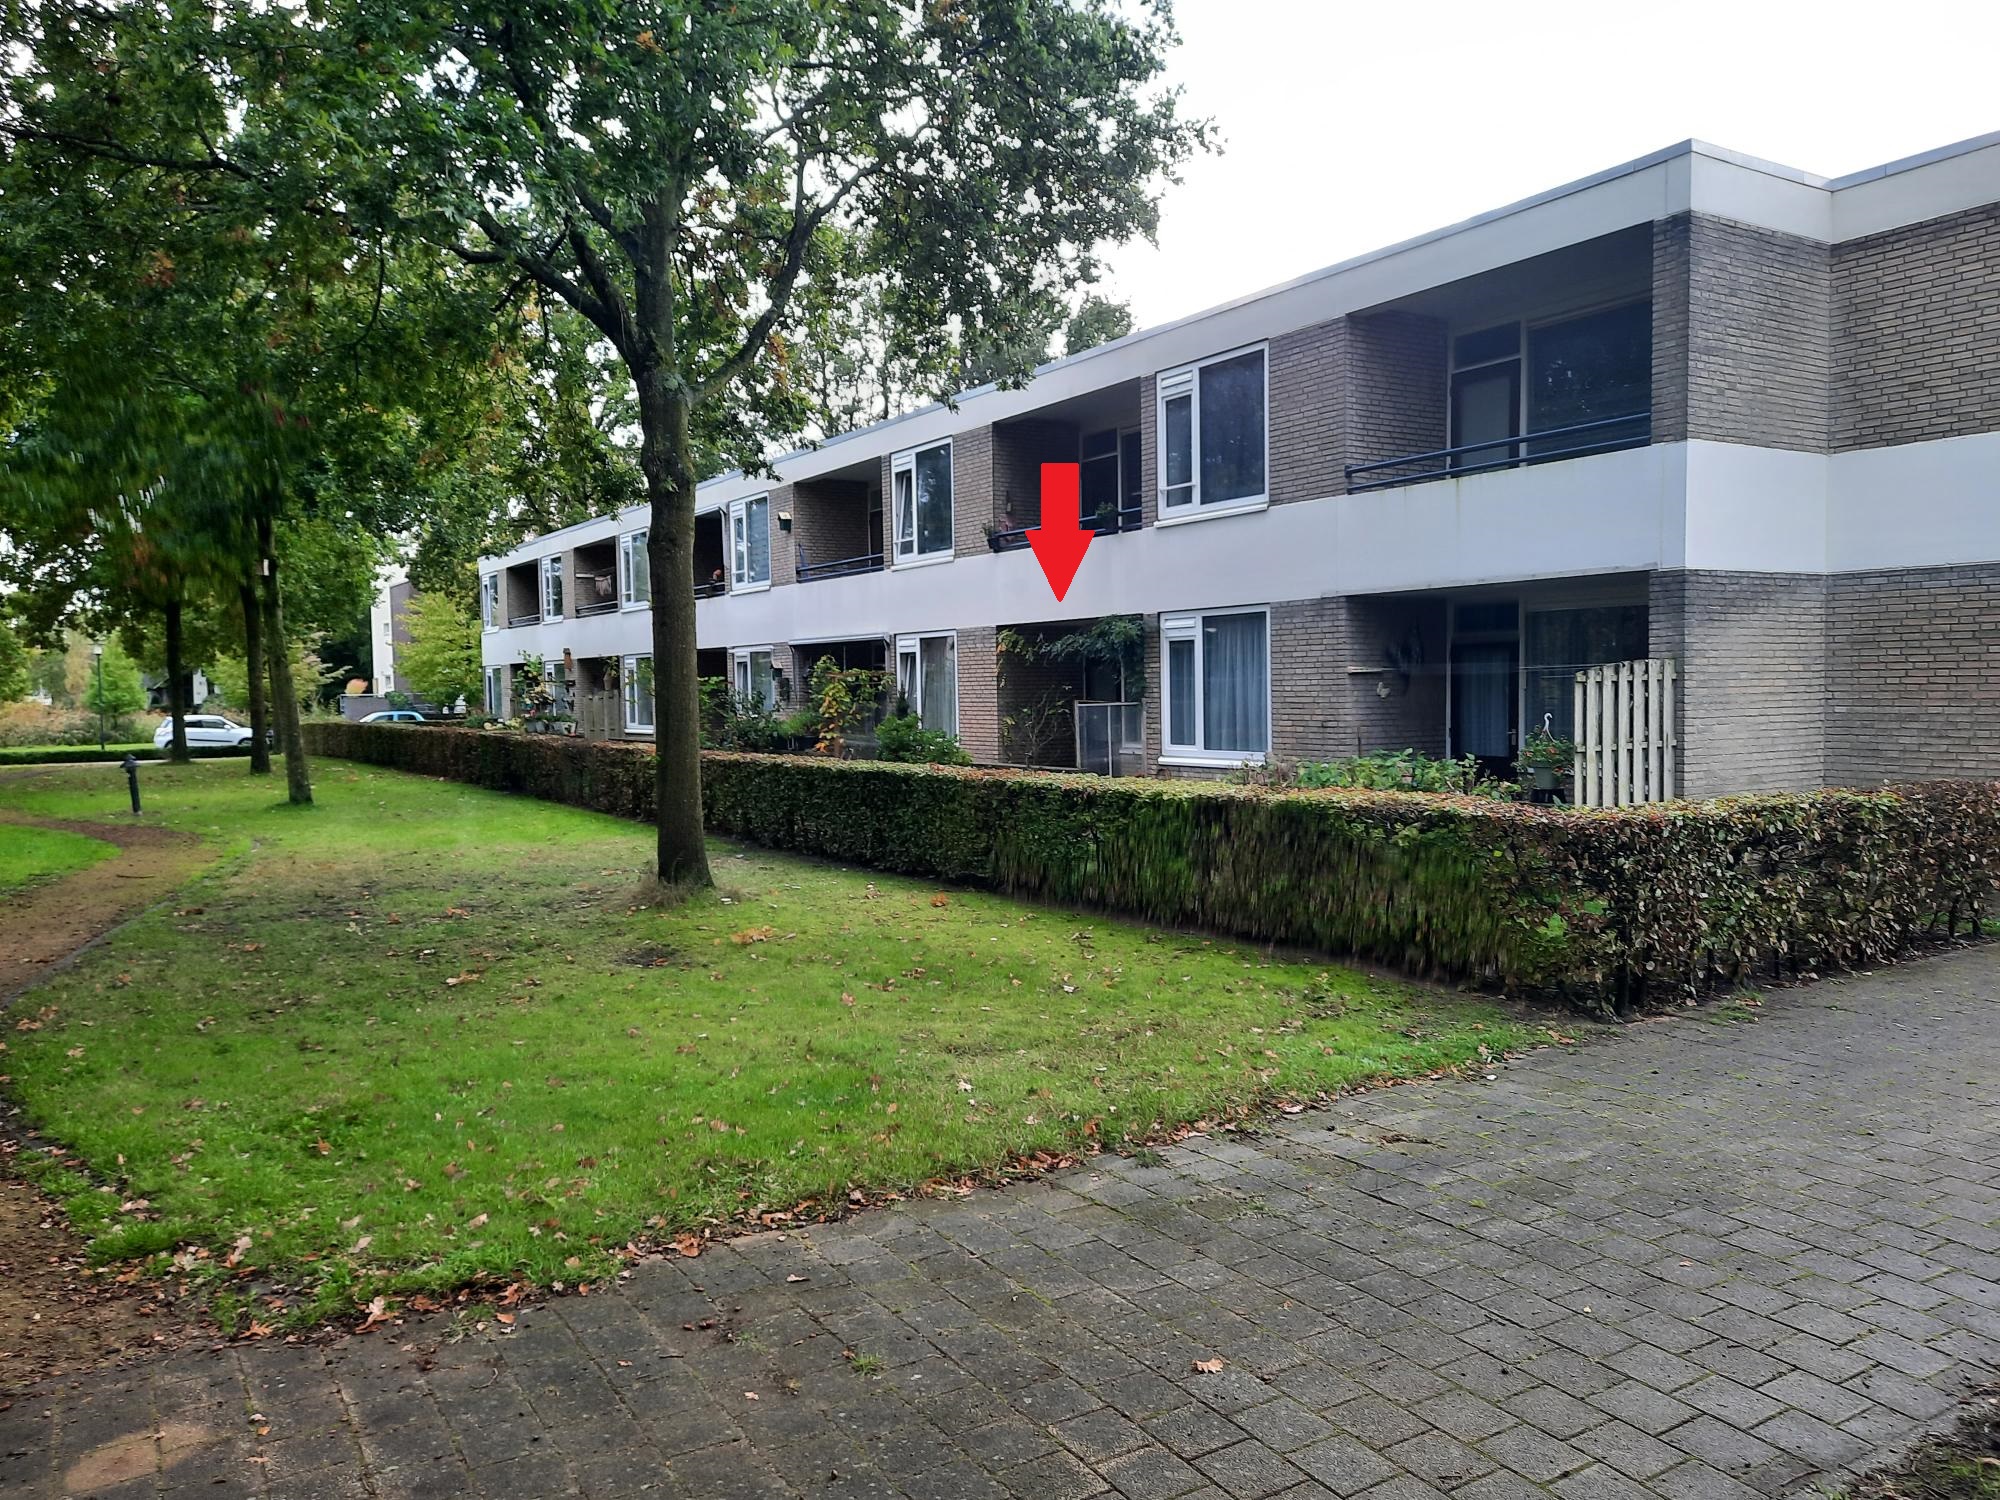 Cortembergstraat 67, 5144 CE Waalwijk, Nederland